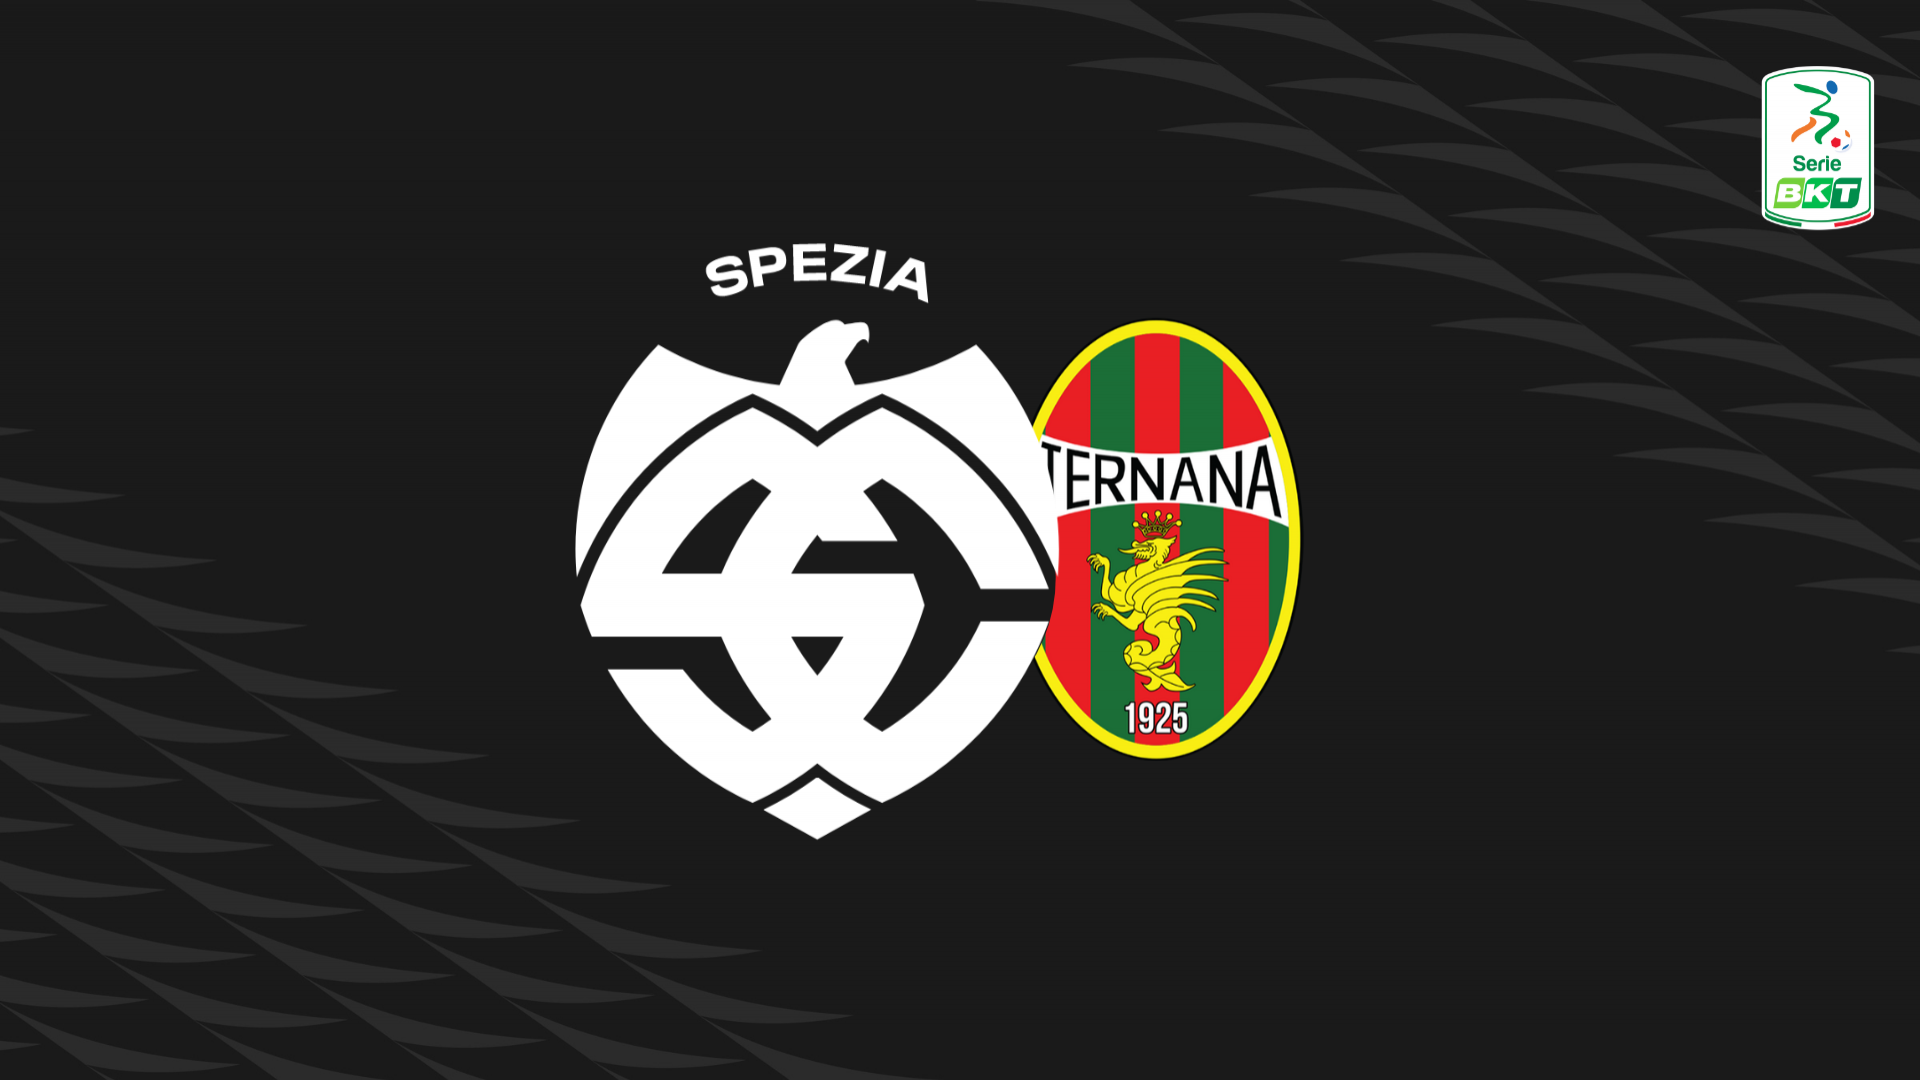 Serie BKT: Spezia-Ternana 2-2